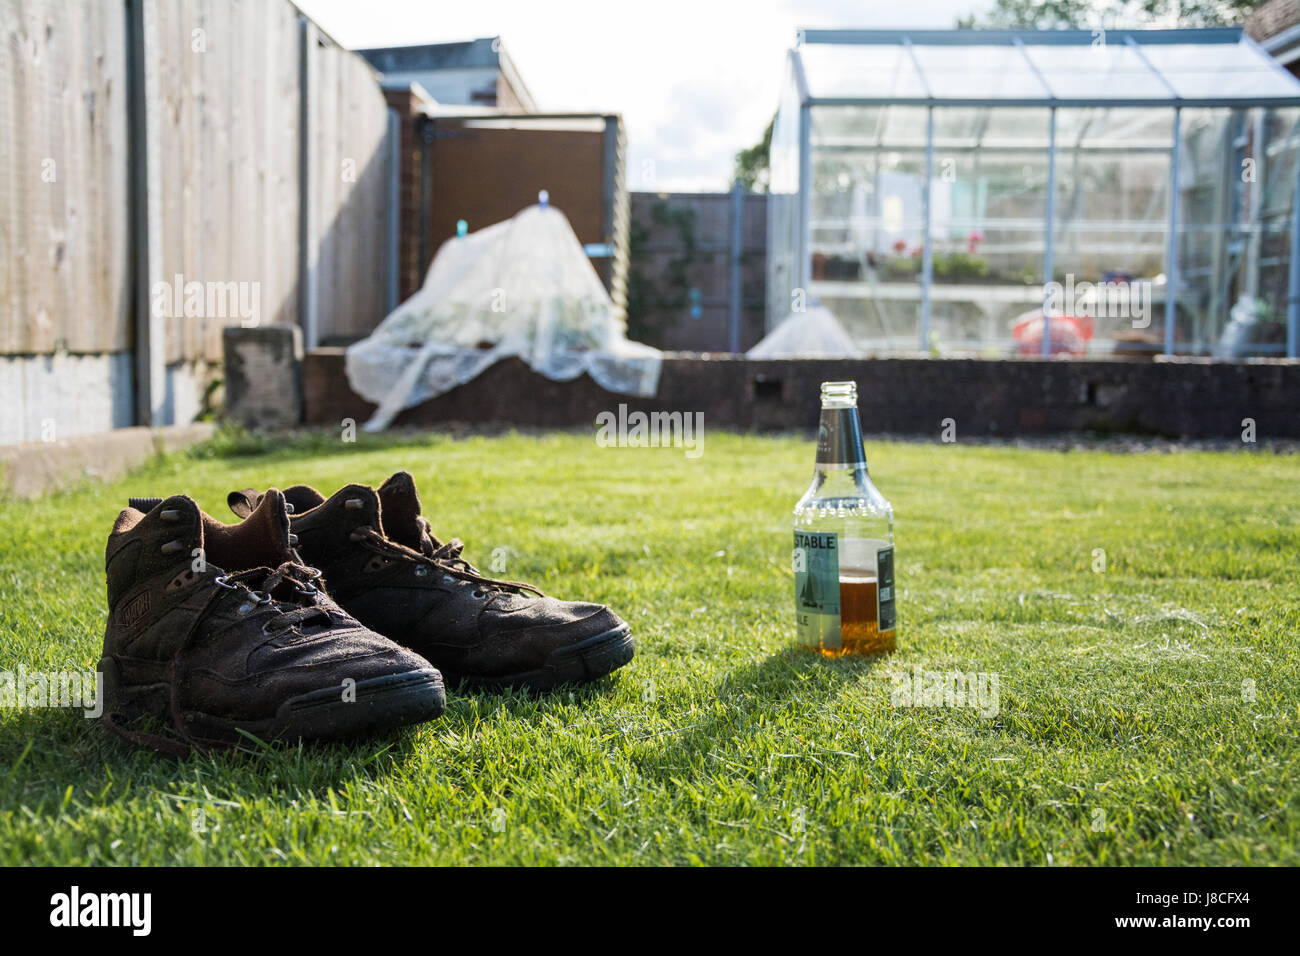 Une paire de bottes marron imbibée d'eau à côté d'une bouteille de bière par une chaude journée ensoleillée. Après une dure journée de travail dans le jardin. Les émissions en arrière-plan Banque D'Images